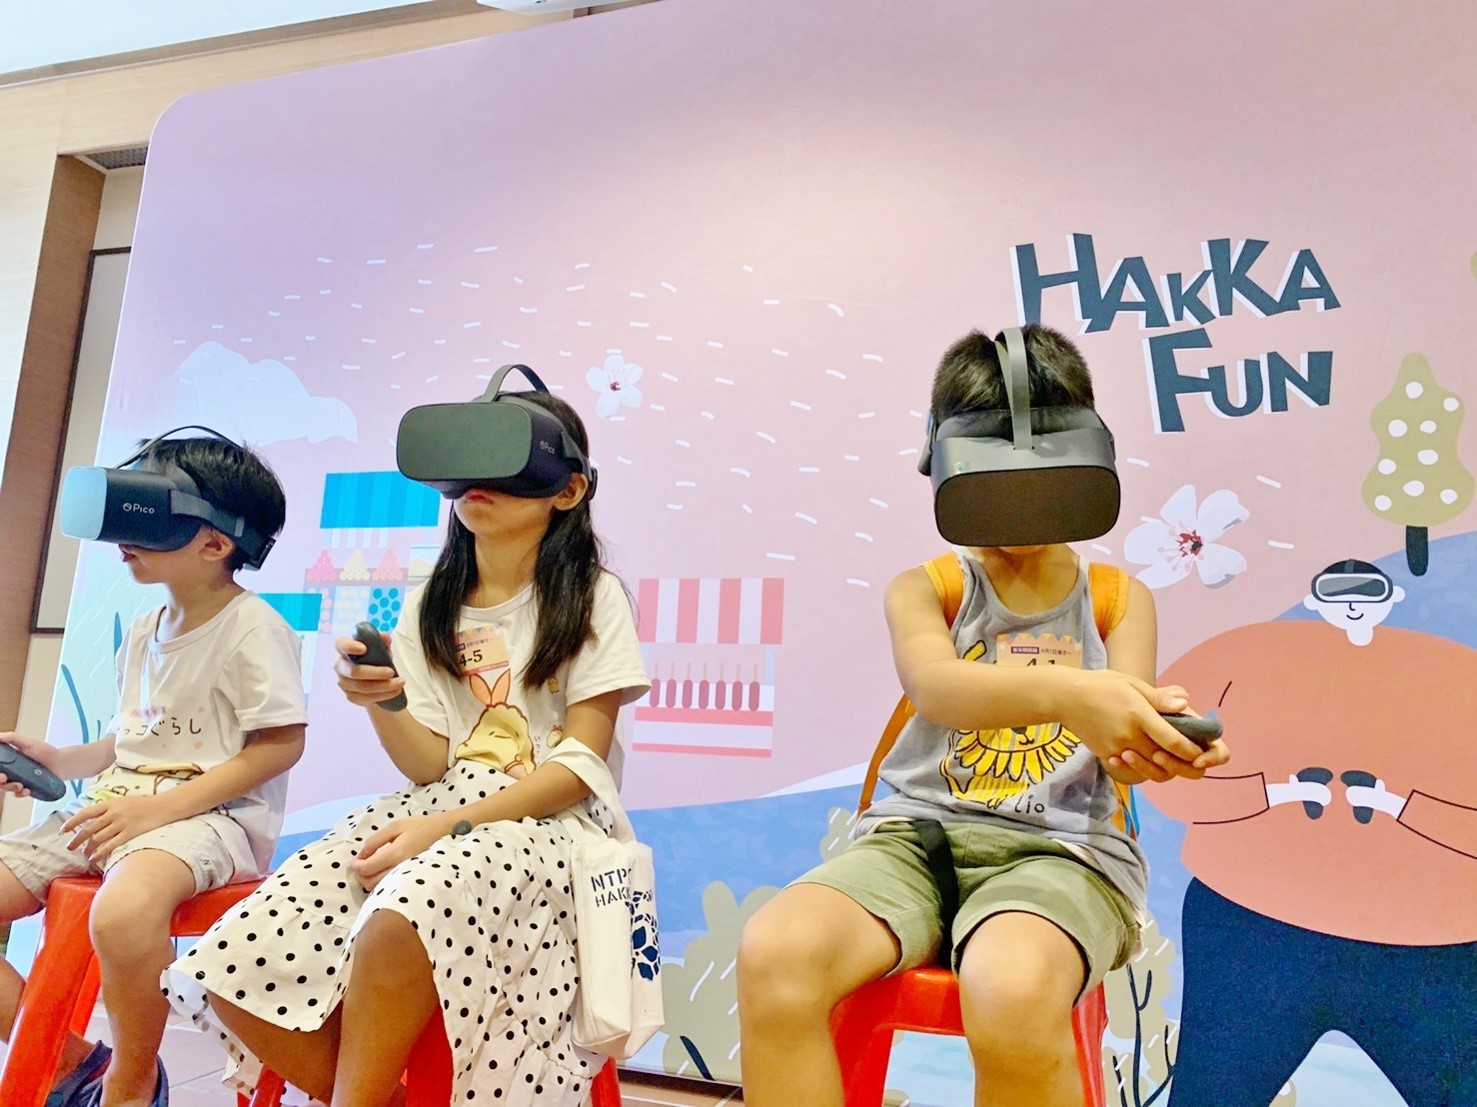 文創客語科技化：透過運用新興科技AR及VR等，引導年輕世代於遊樂中學習客語，推展創意學習客家語言及文化。